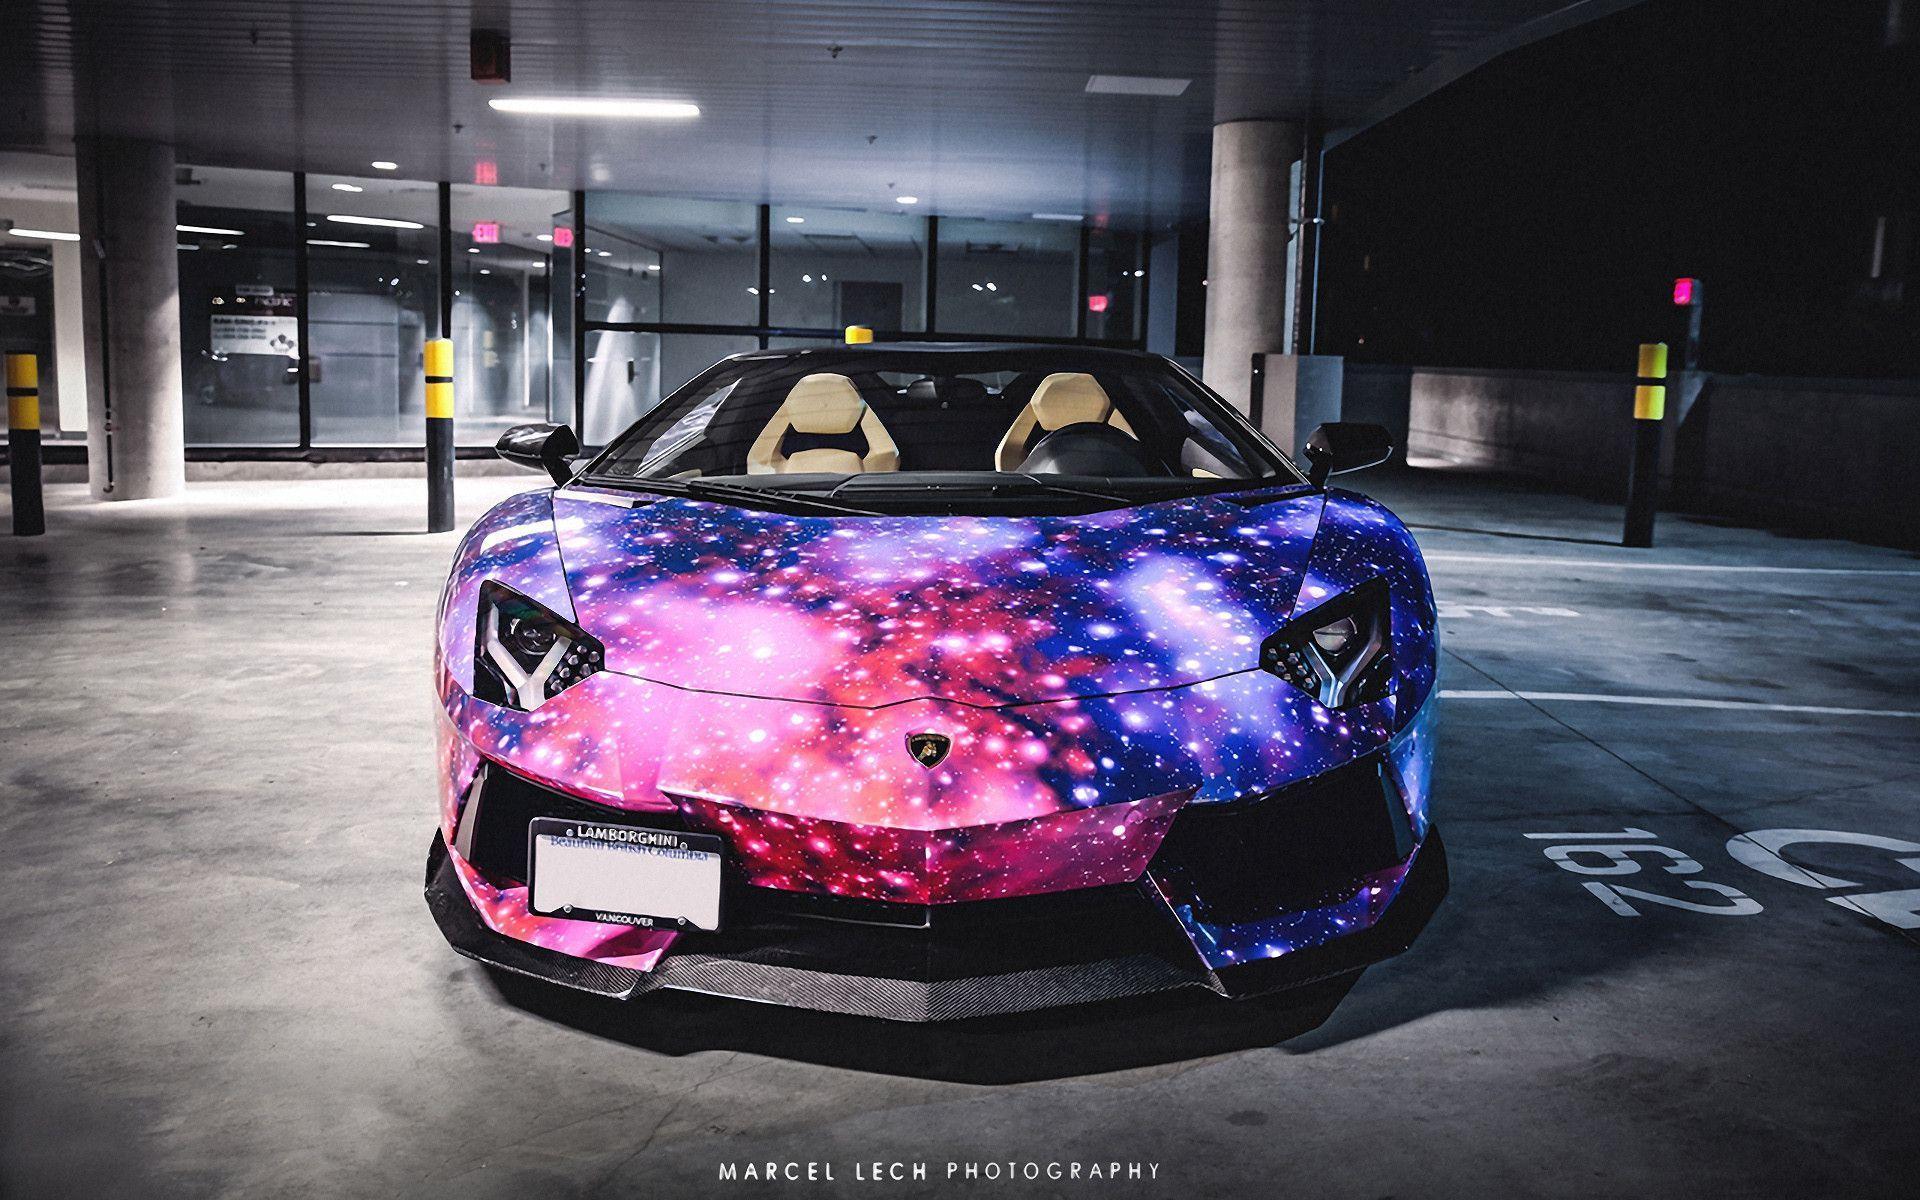 Lamborghini Galaxy Wallpaper là sự kết hợp tuyệt đẹp giữa thiết kế đầy ấn tượng của siêu xe cùng hiệu ứng không gian tuyệt vời. Nhấn mạnh phong cách độc đáo và cá tính của bạn với bức ảnh nền này.